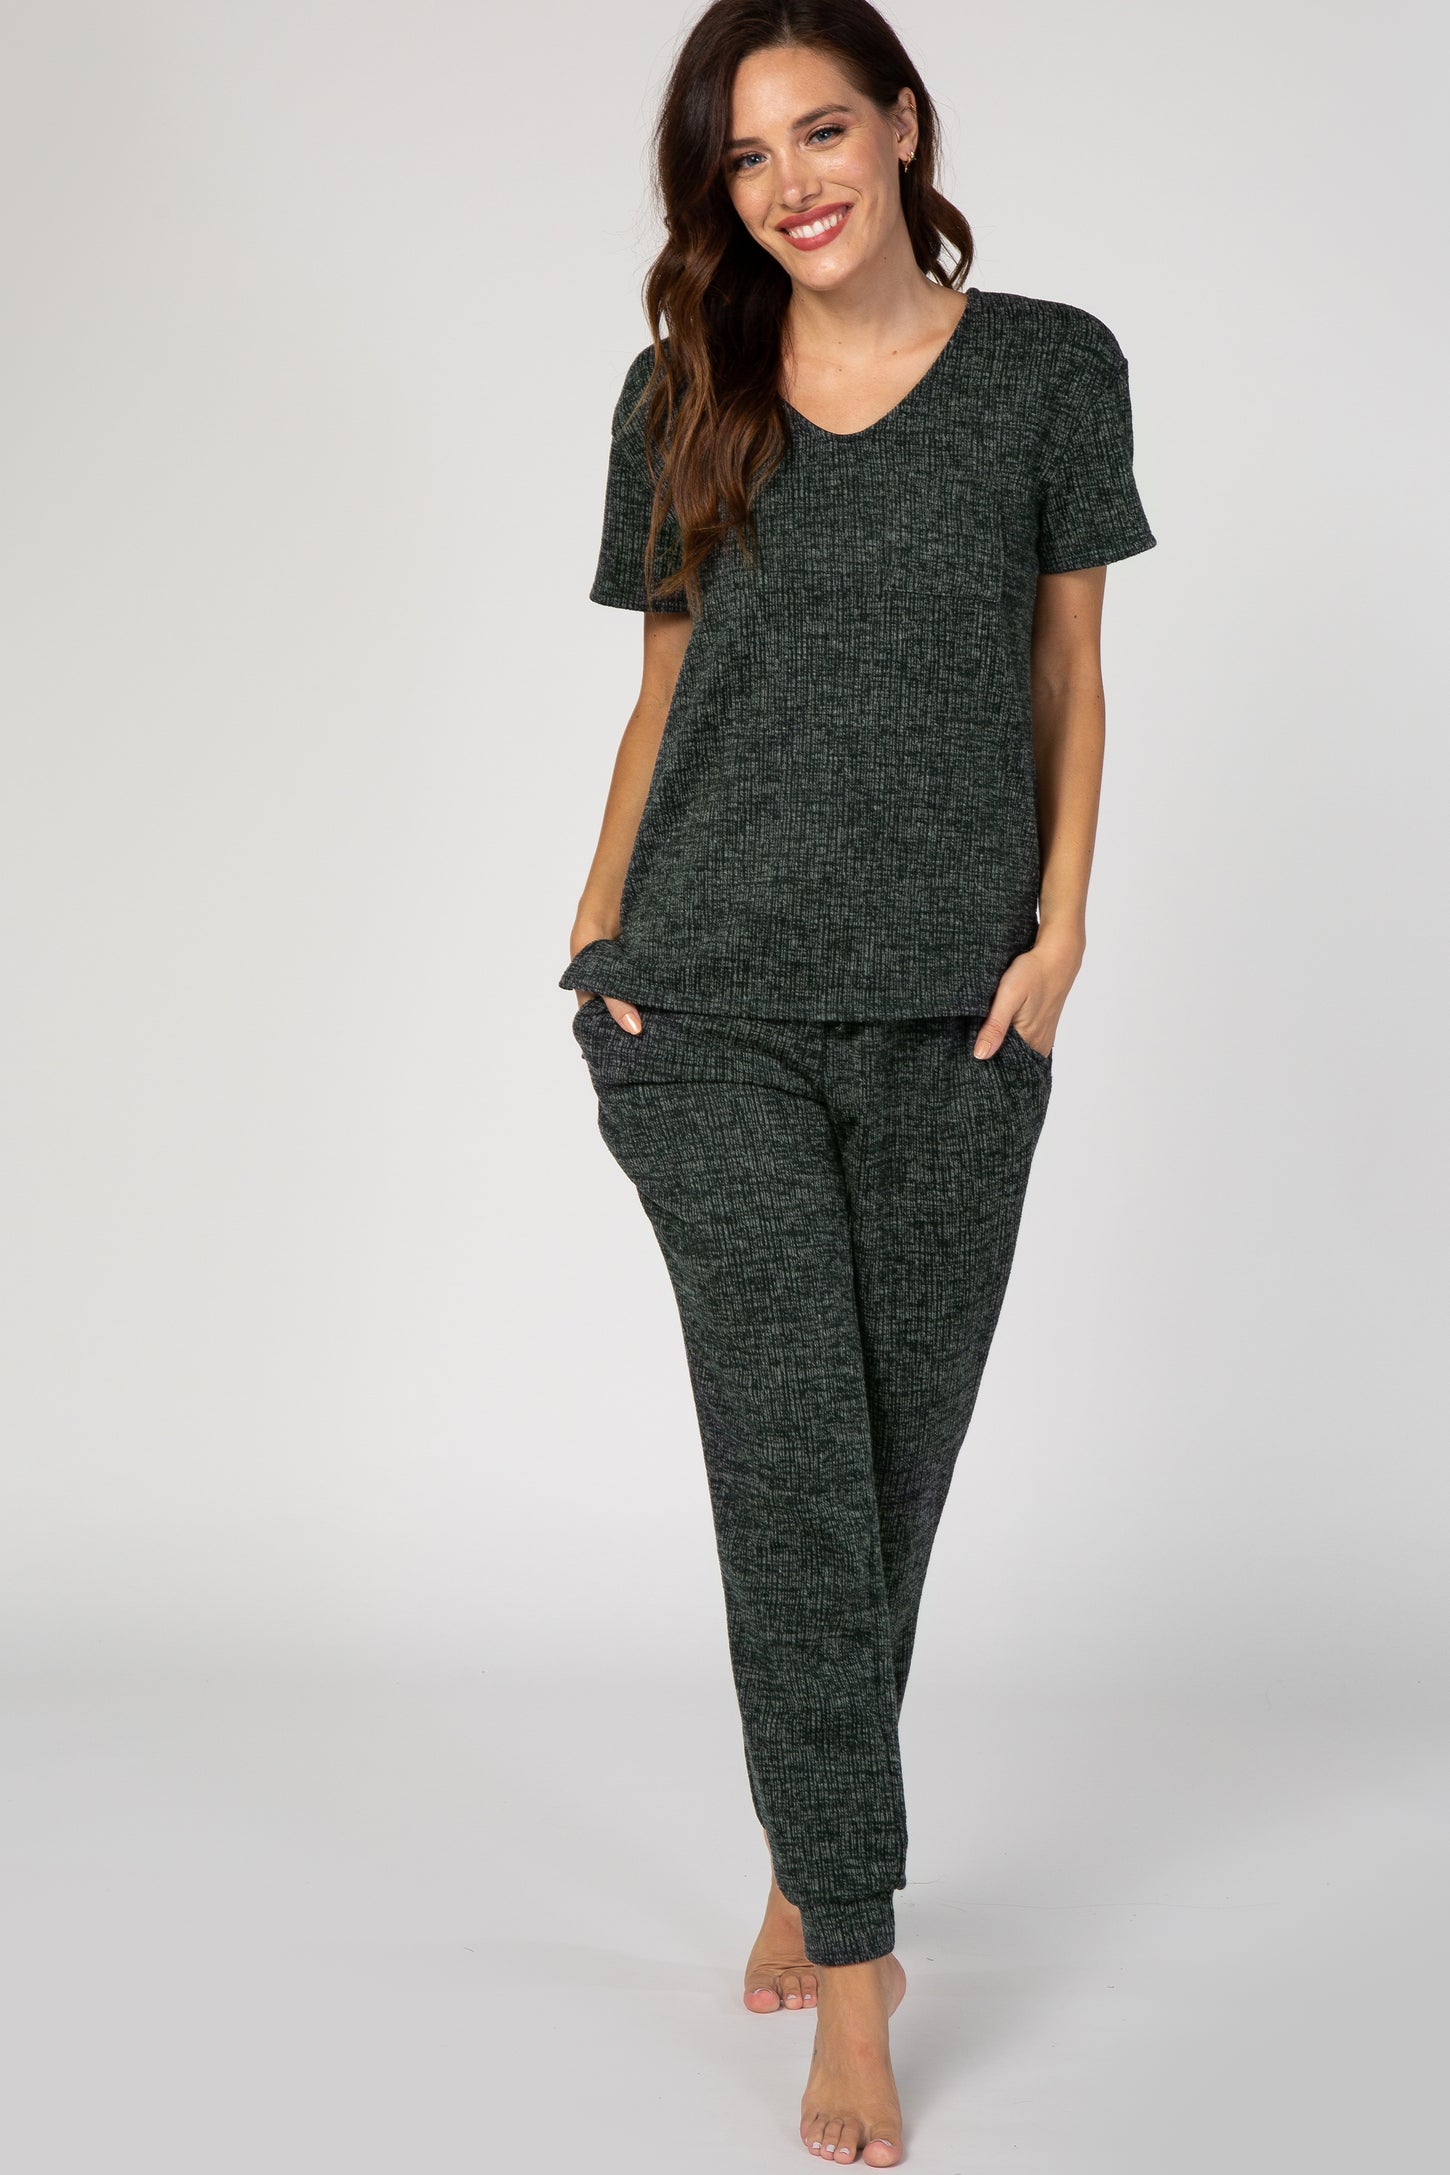 Olive Green Knit Short Sleeve Pajama Set